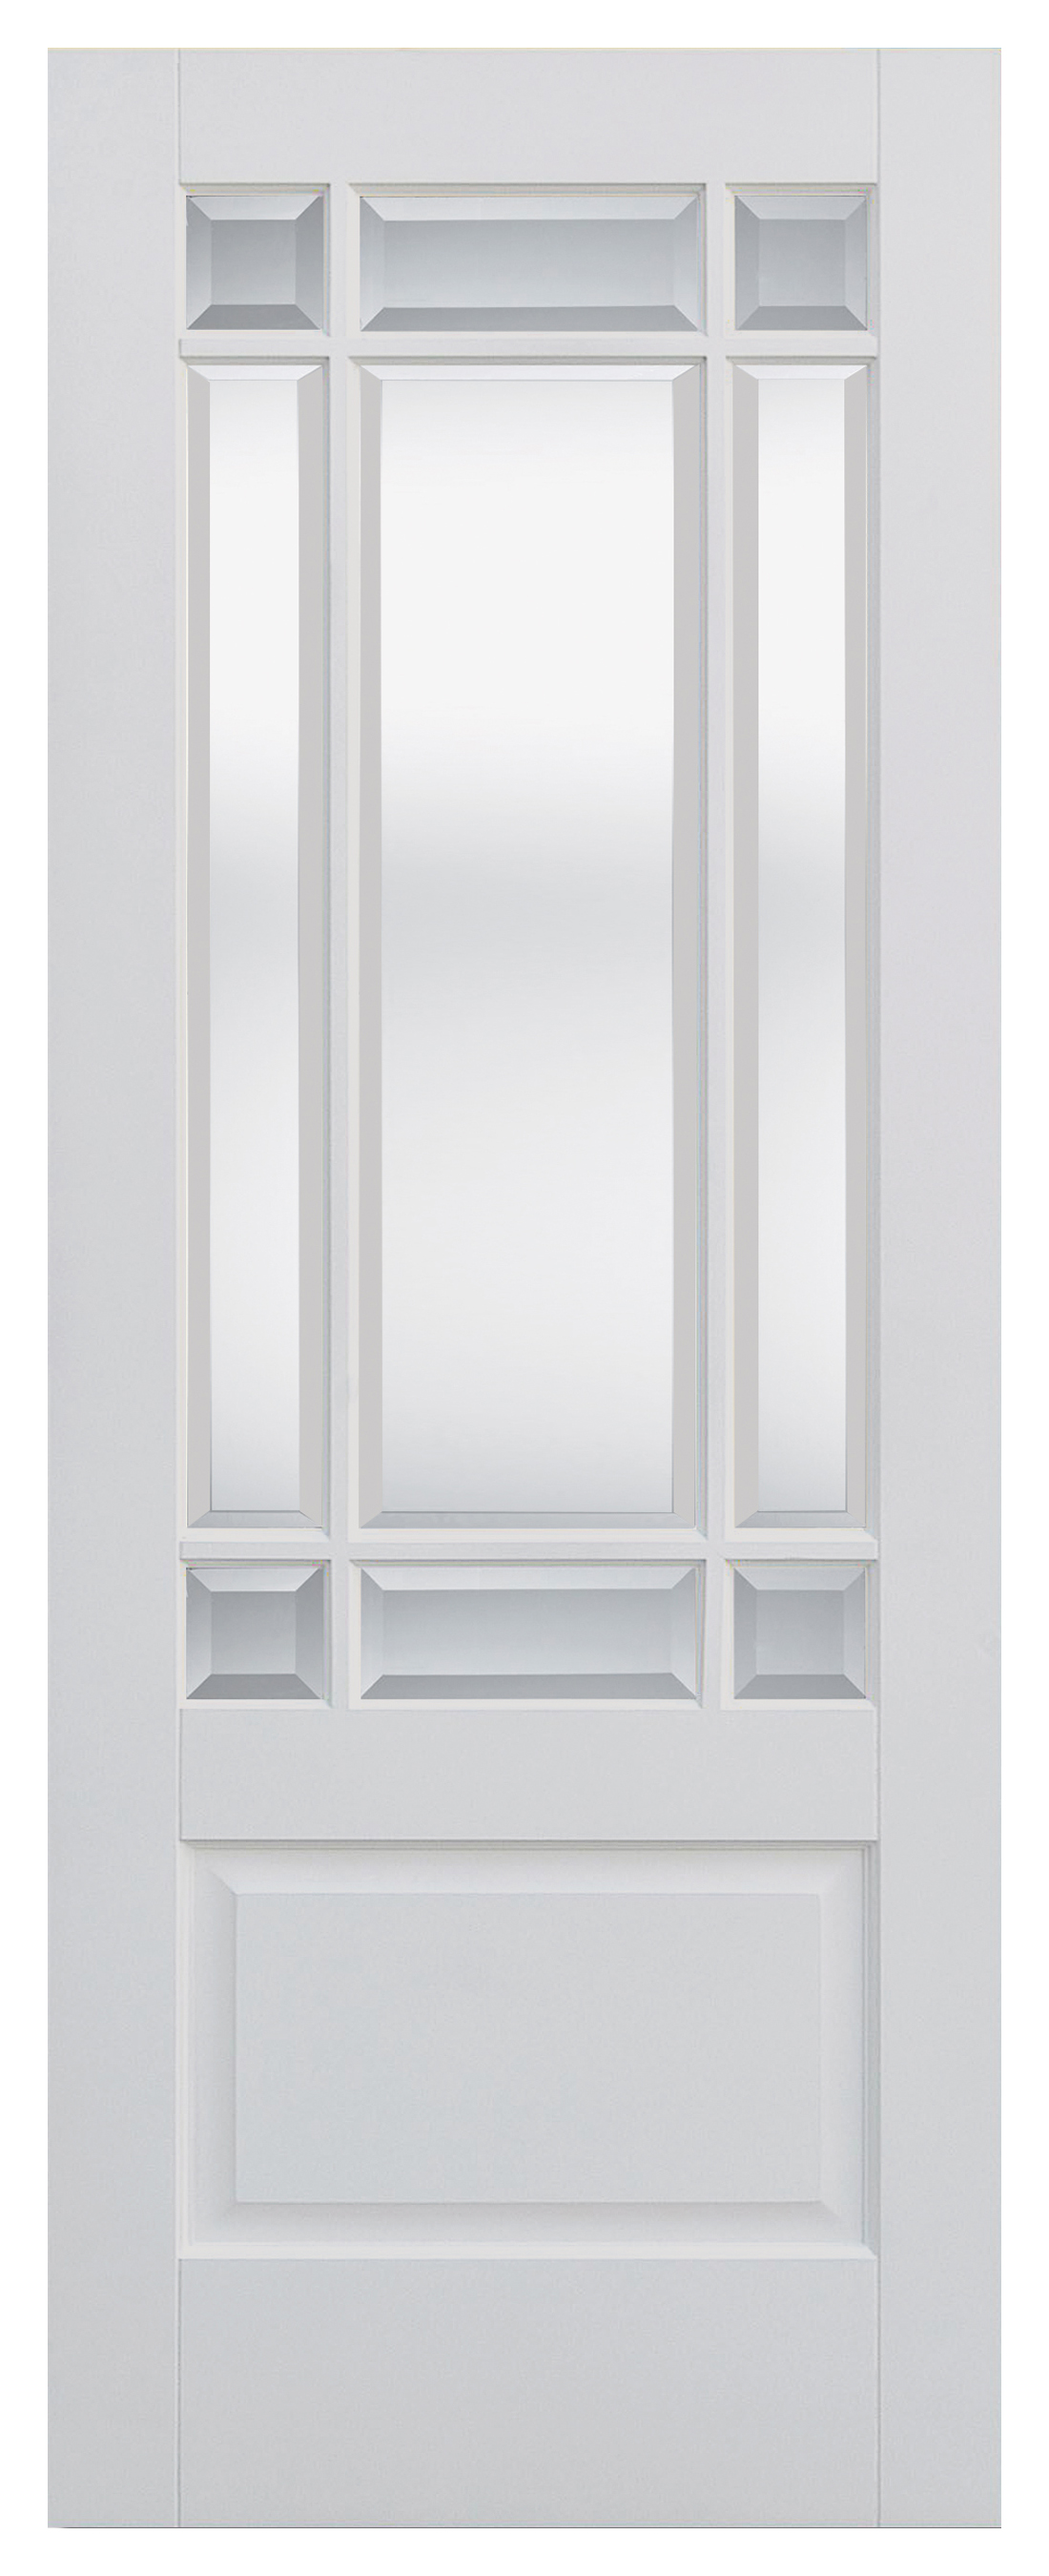 LPD Internal Downham Clear Glazed Primed White Door - 2040mm